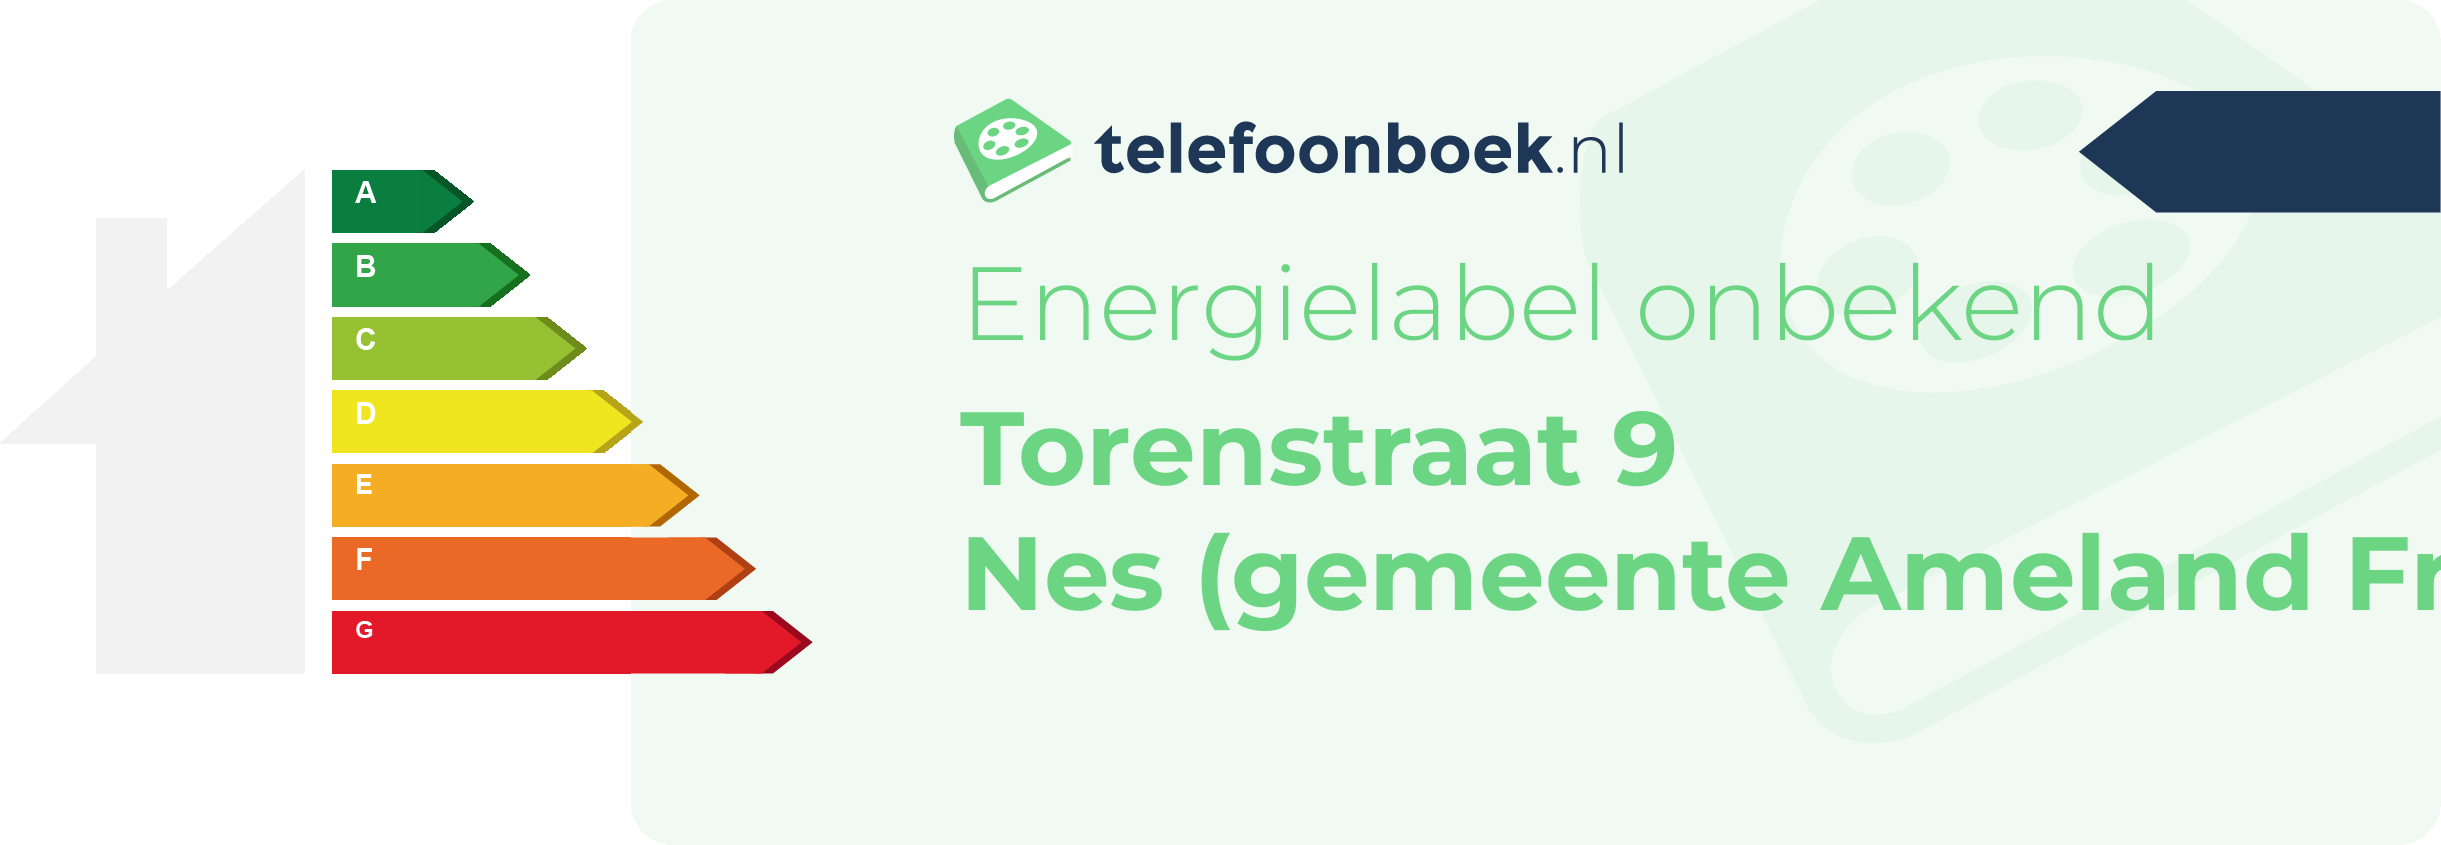 Energielabel Torenstraat 9 Nes (gemeente Ameland Friesland)